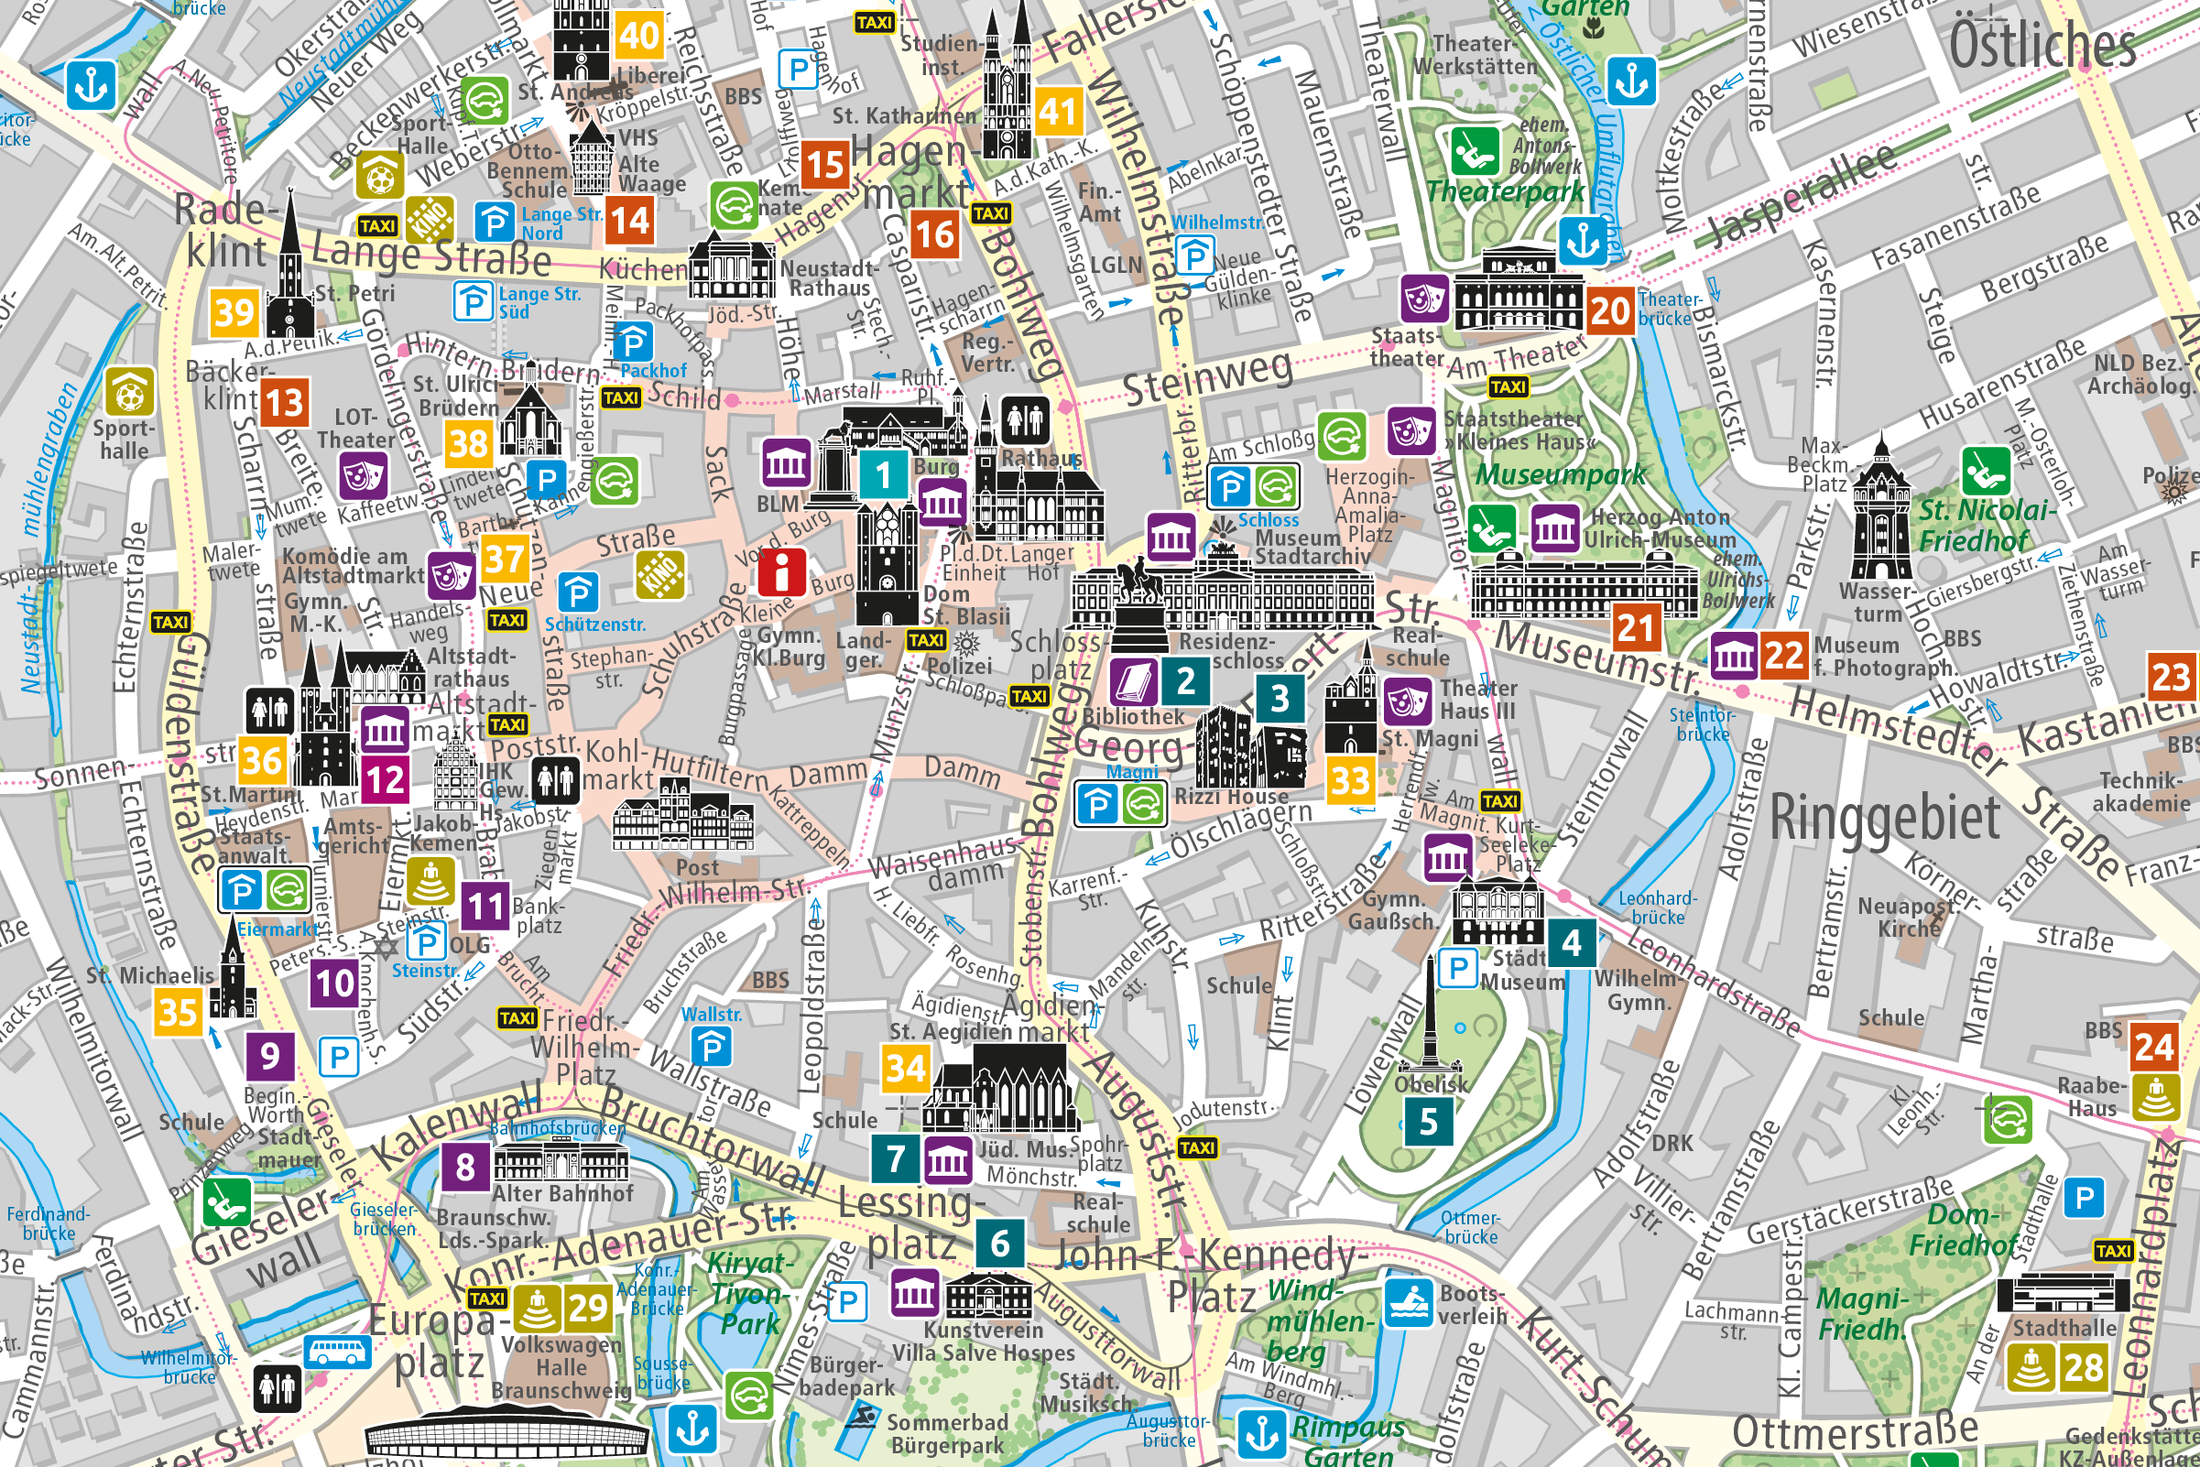 Innenstadtkarte 1 : 10.000 - mit Sehenswürdigkeiten (Wird bei Klick vergrößert)